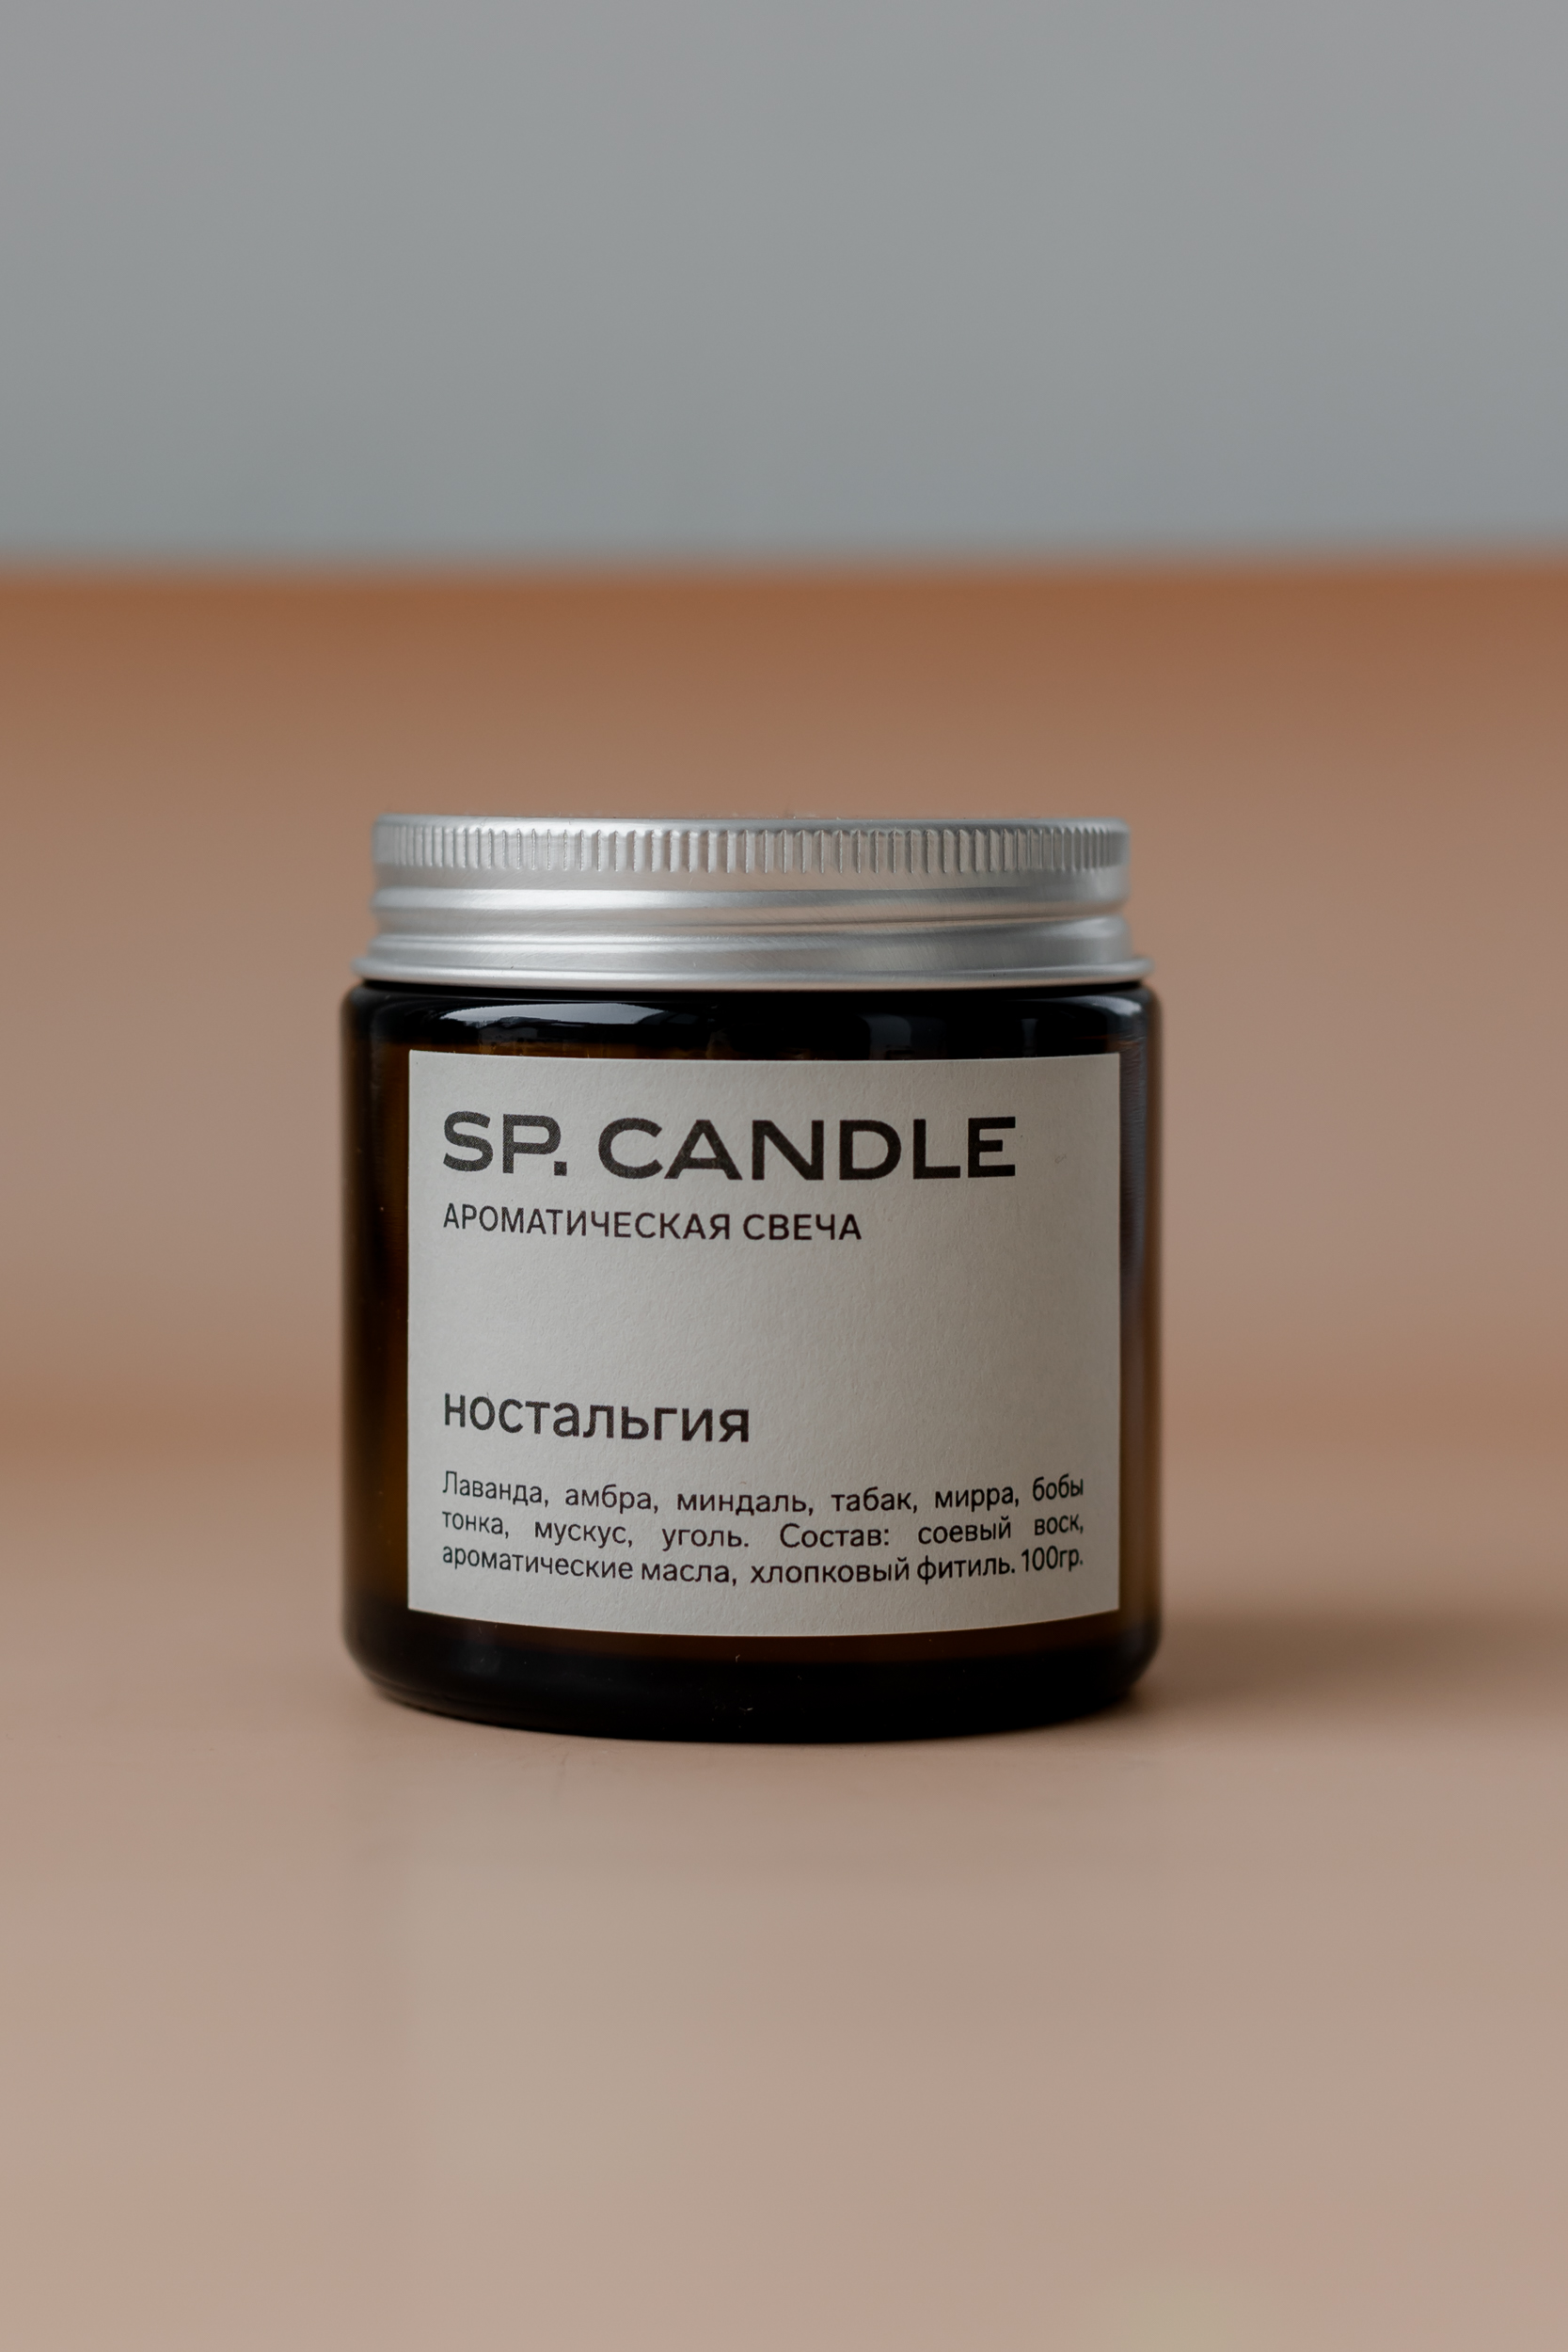 SP. CANDLE Ароматическая свеча Ностальгия, 100г - фото 1